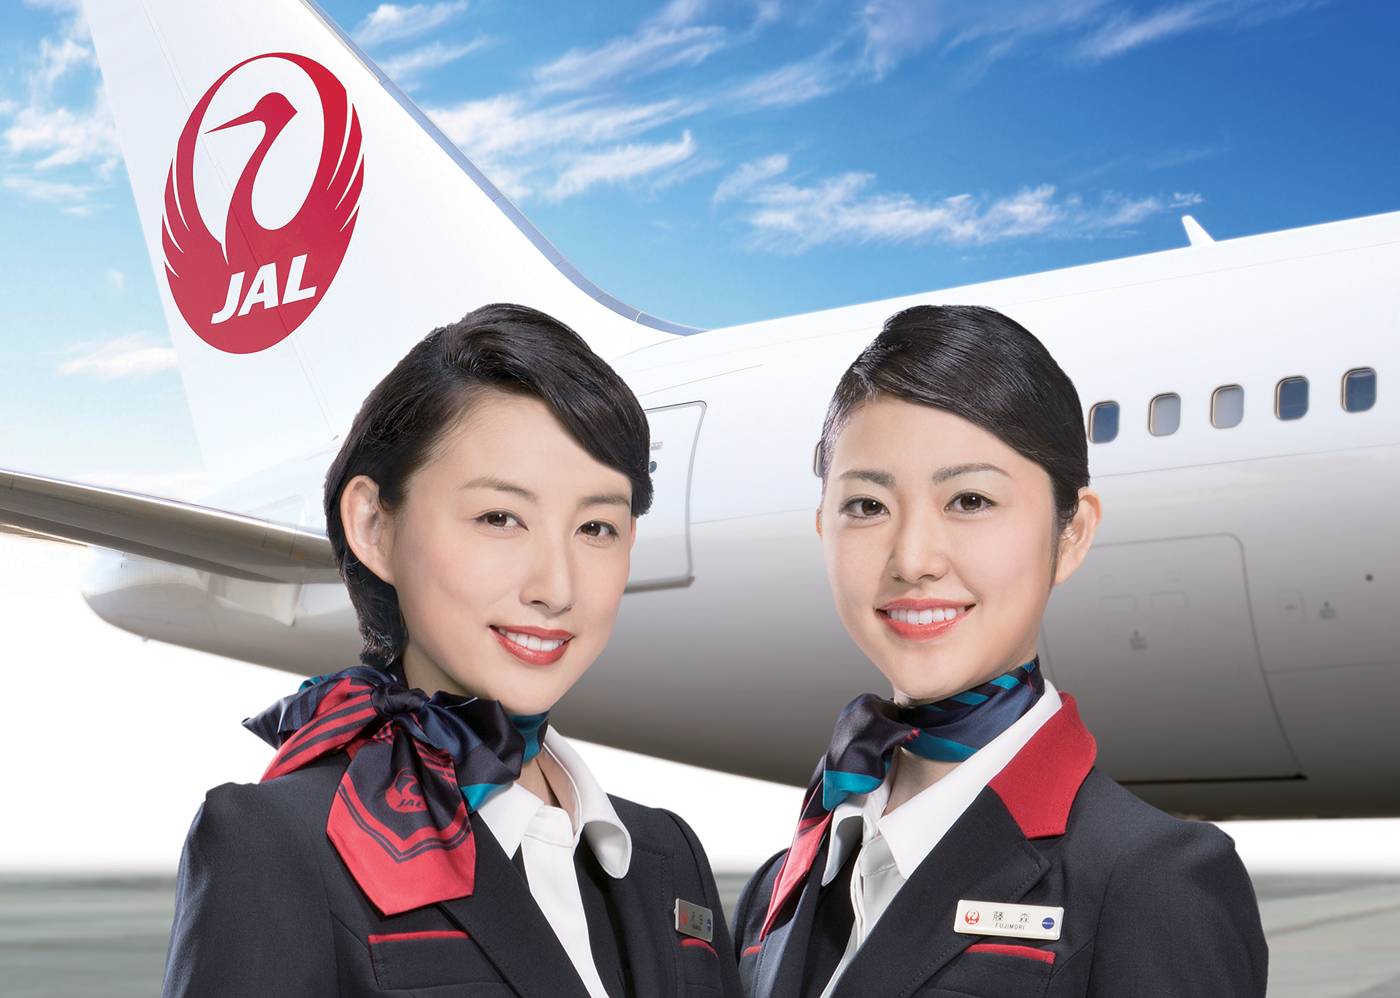 Japan airlines – одна из крупнейших авиакомпаний азии